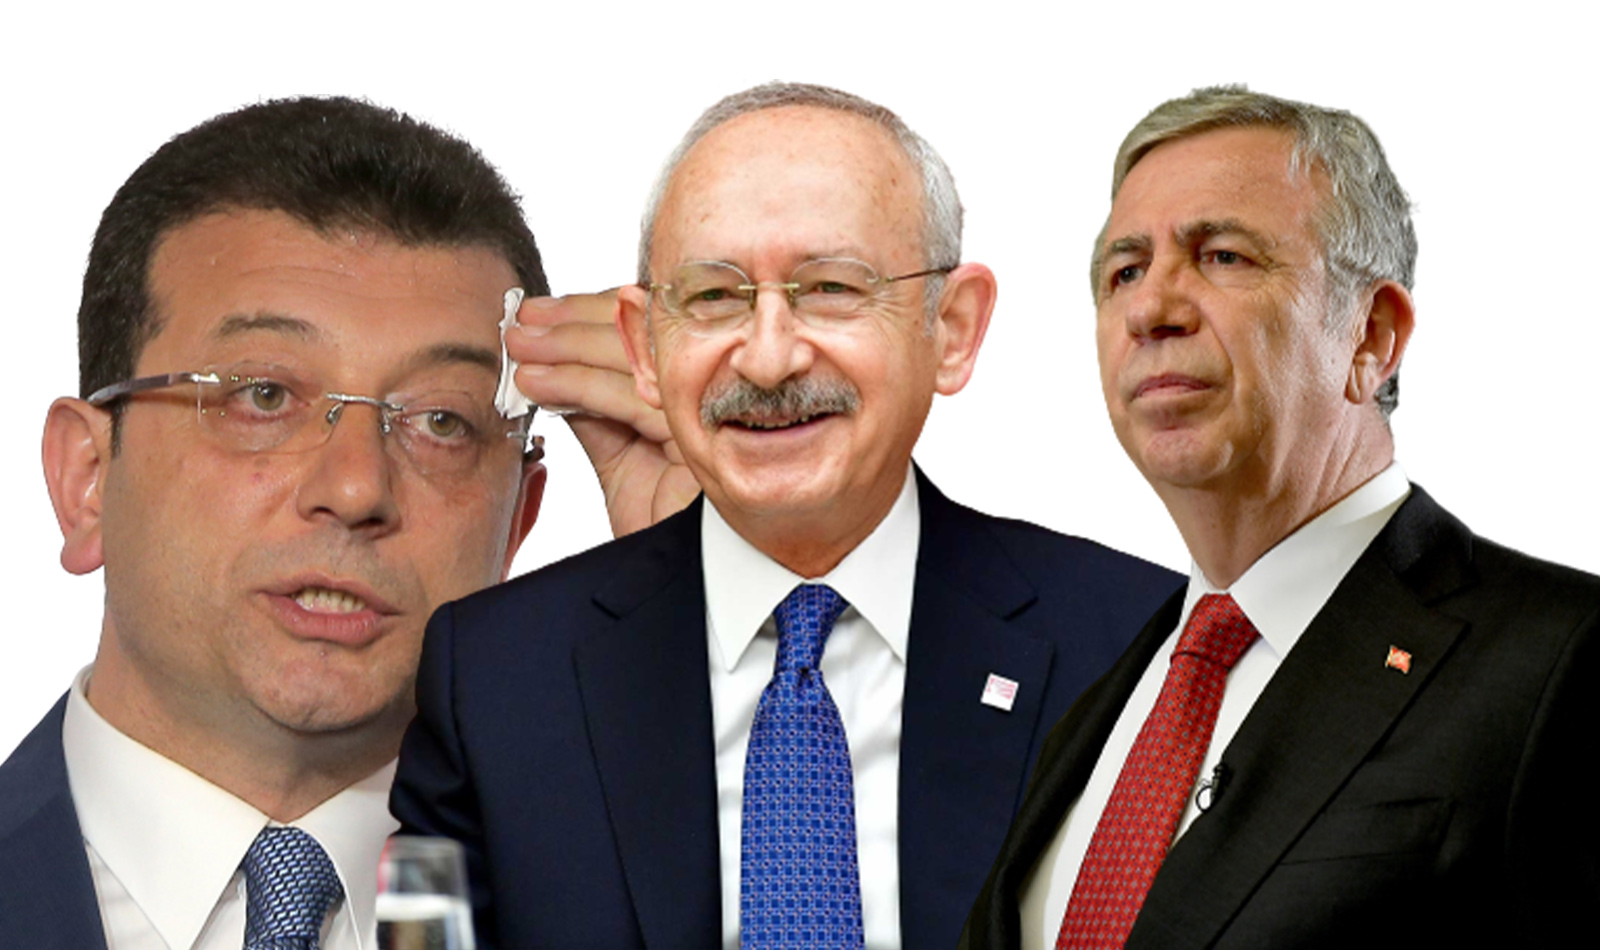 Cumhurbaşkanı Erdoğan'ı hedef alan Kılıçdaroğlu'nun amacını Ahmet Hakan açıkladı: Anketlerde Ekrem İmamoğlu ile Mansur Yavaş’ı geçmek.